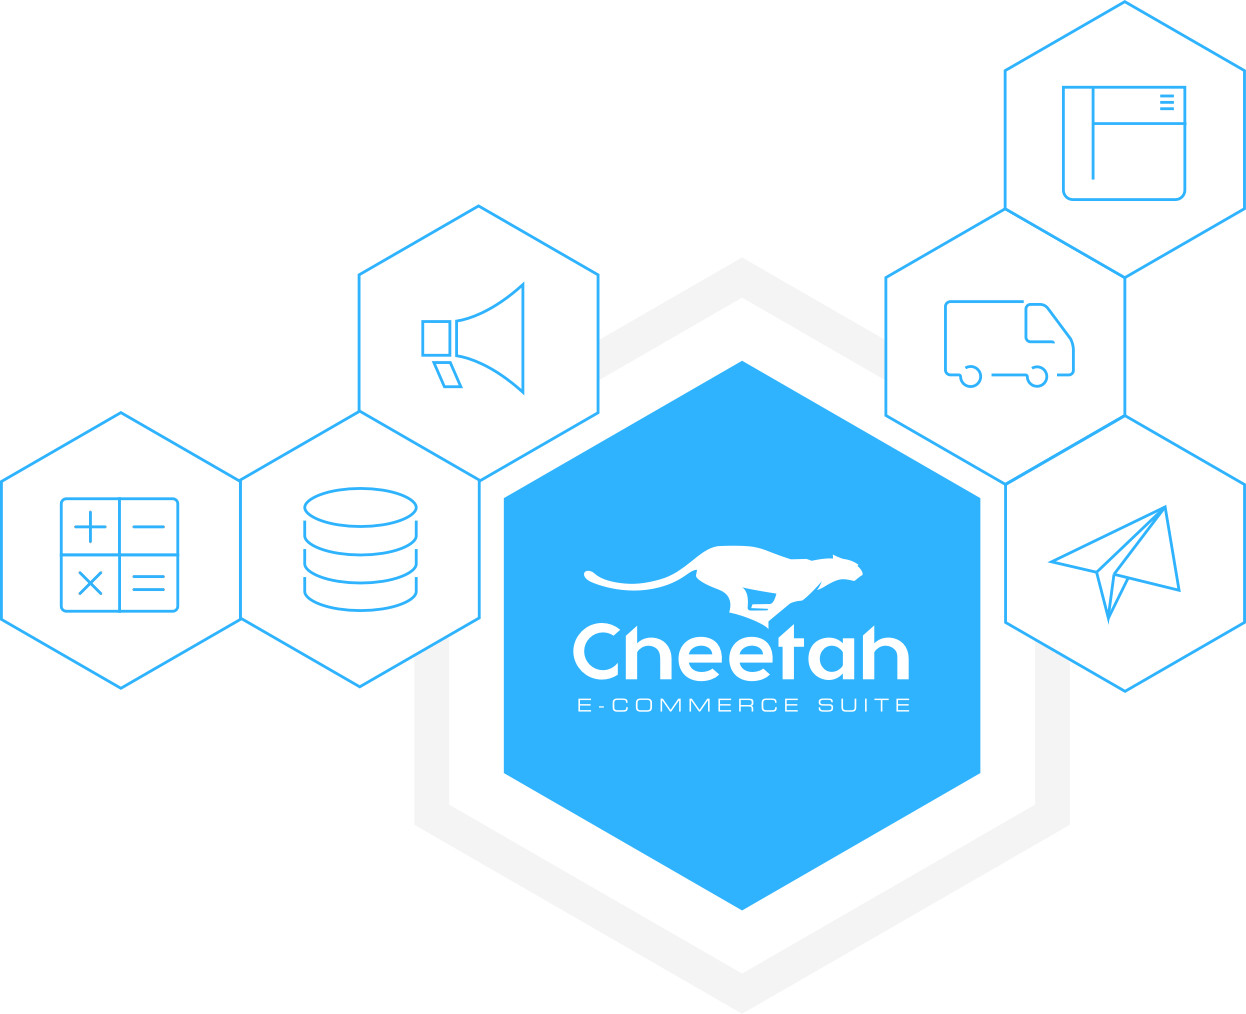 Cheetah e-commerce suite